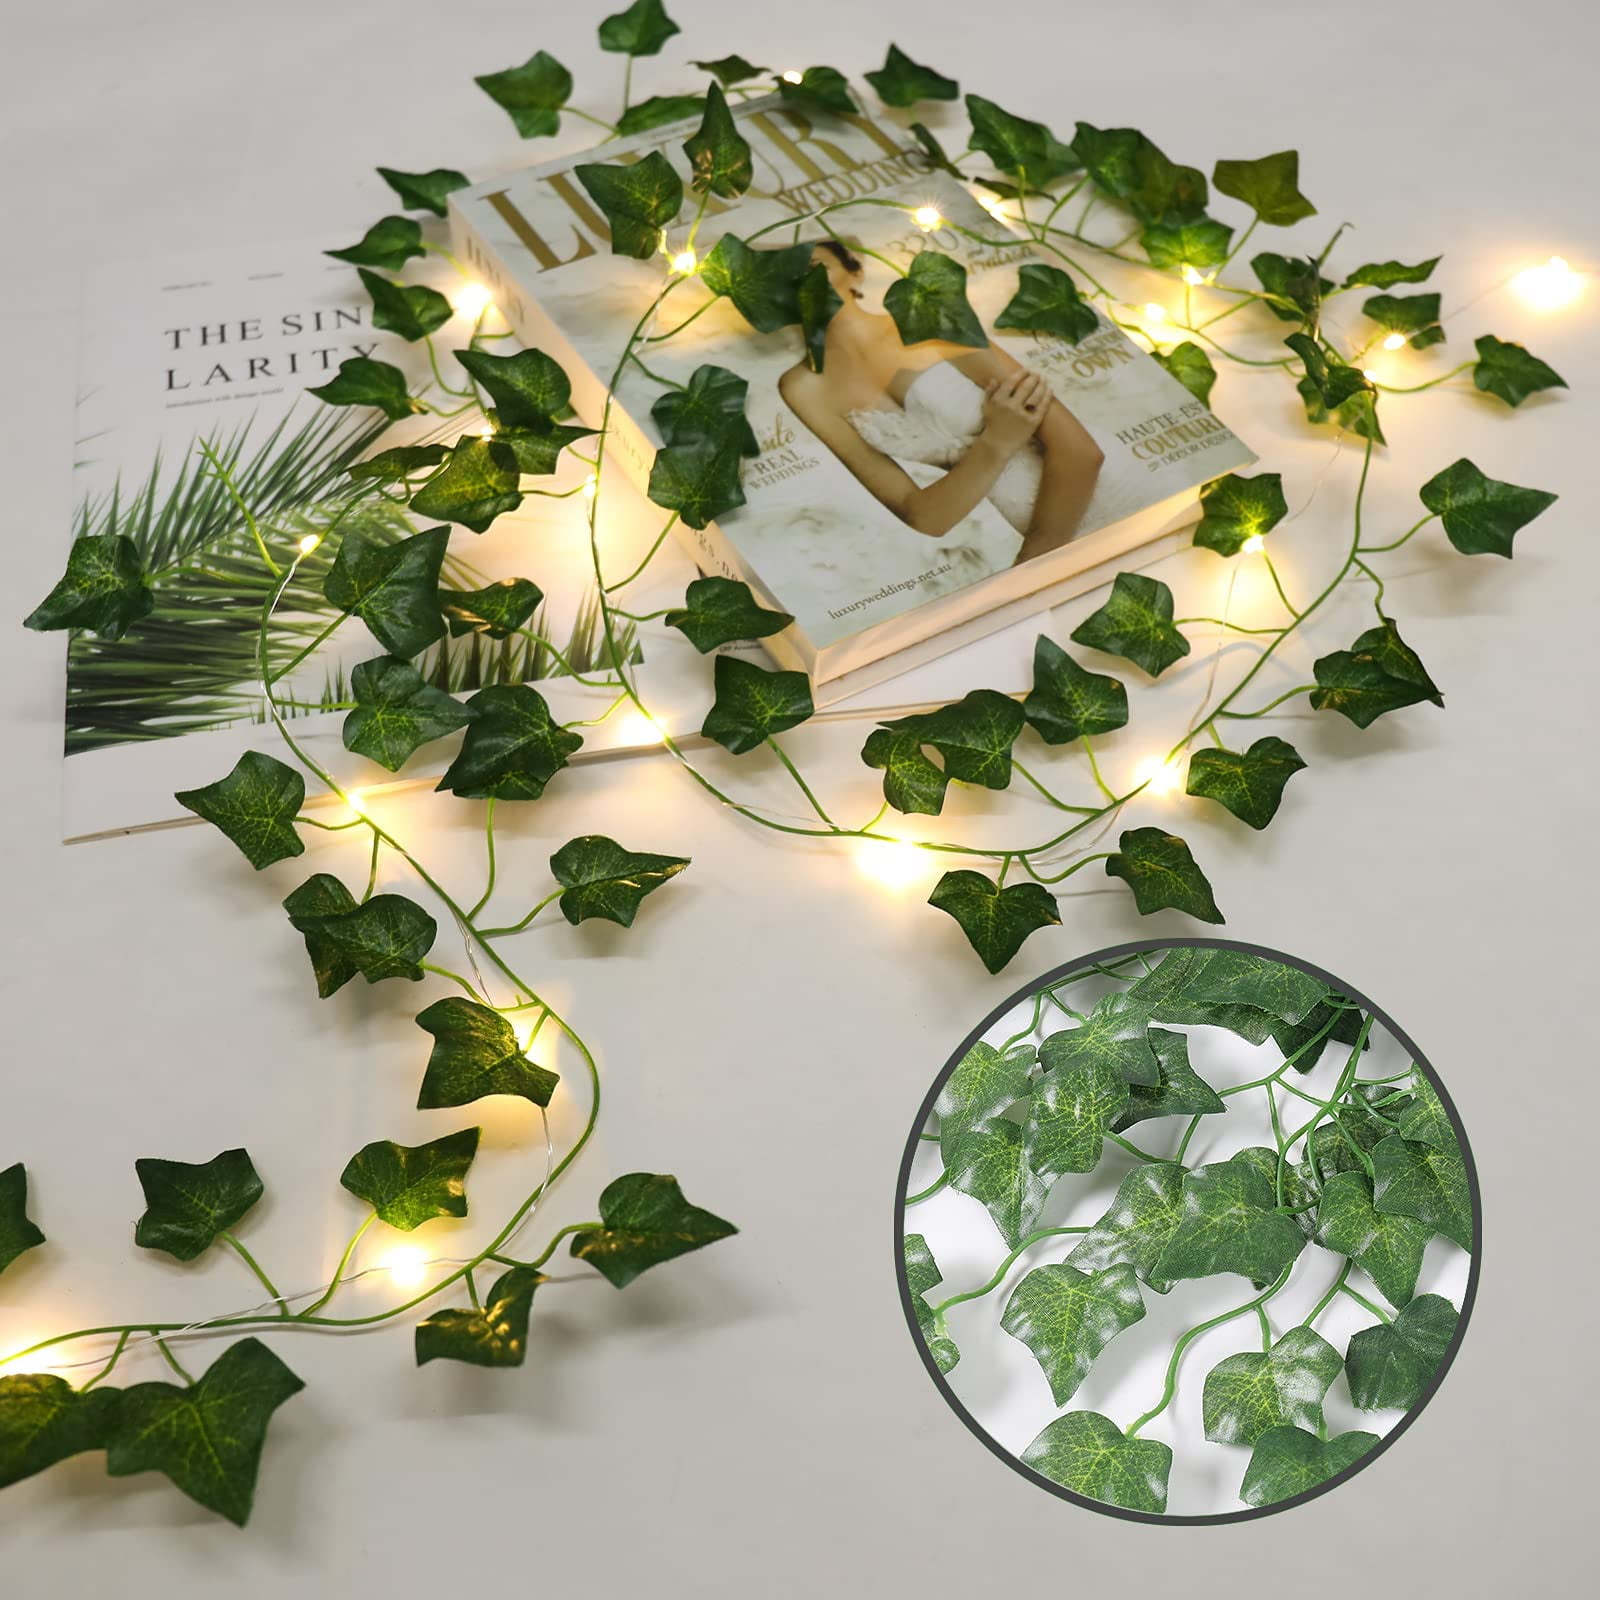 Khalijah 12 Pack 84 ft Artificial Ivy Garland Plants Ivy Vines CE Certified 80 LED String Lights Winston Porter